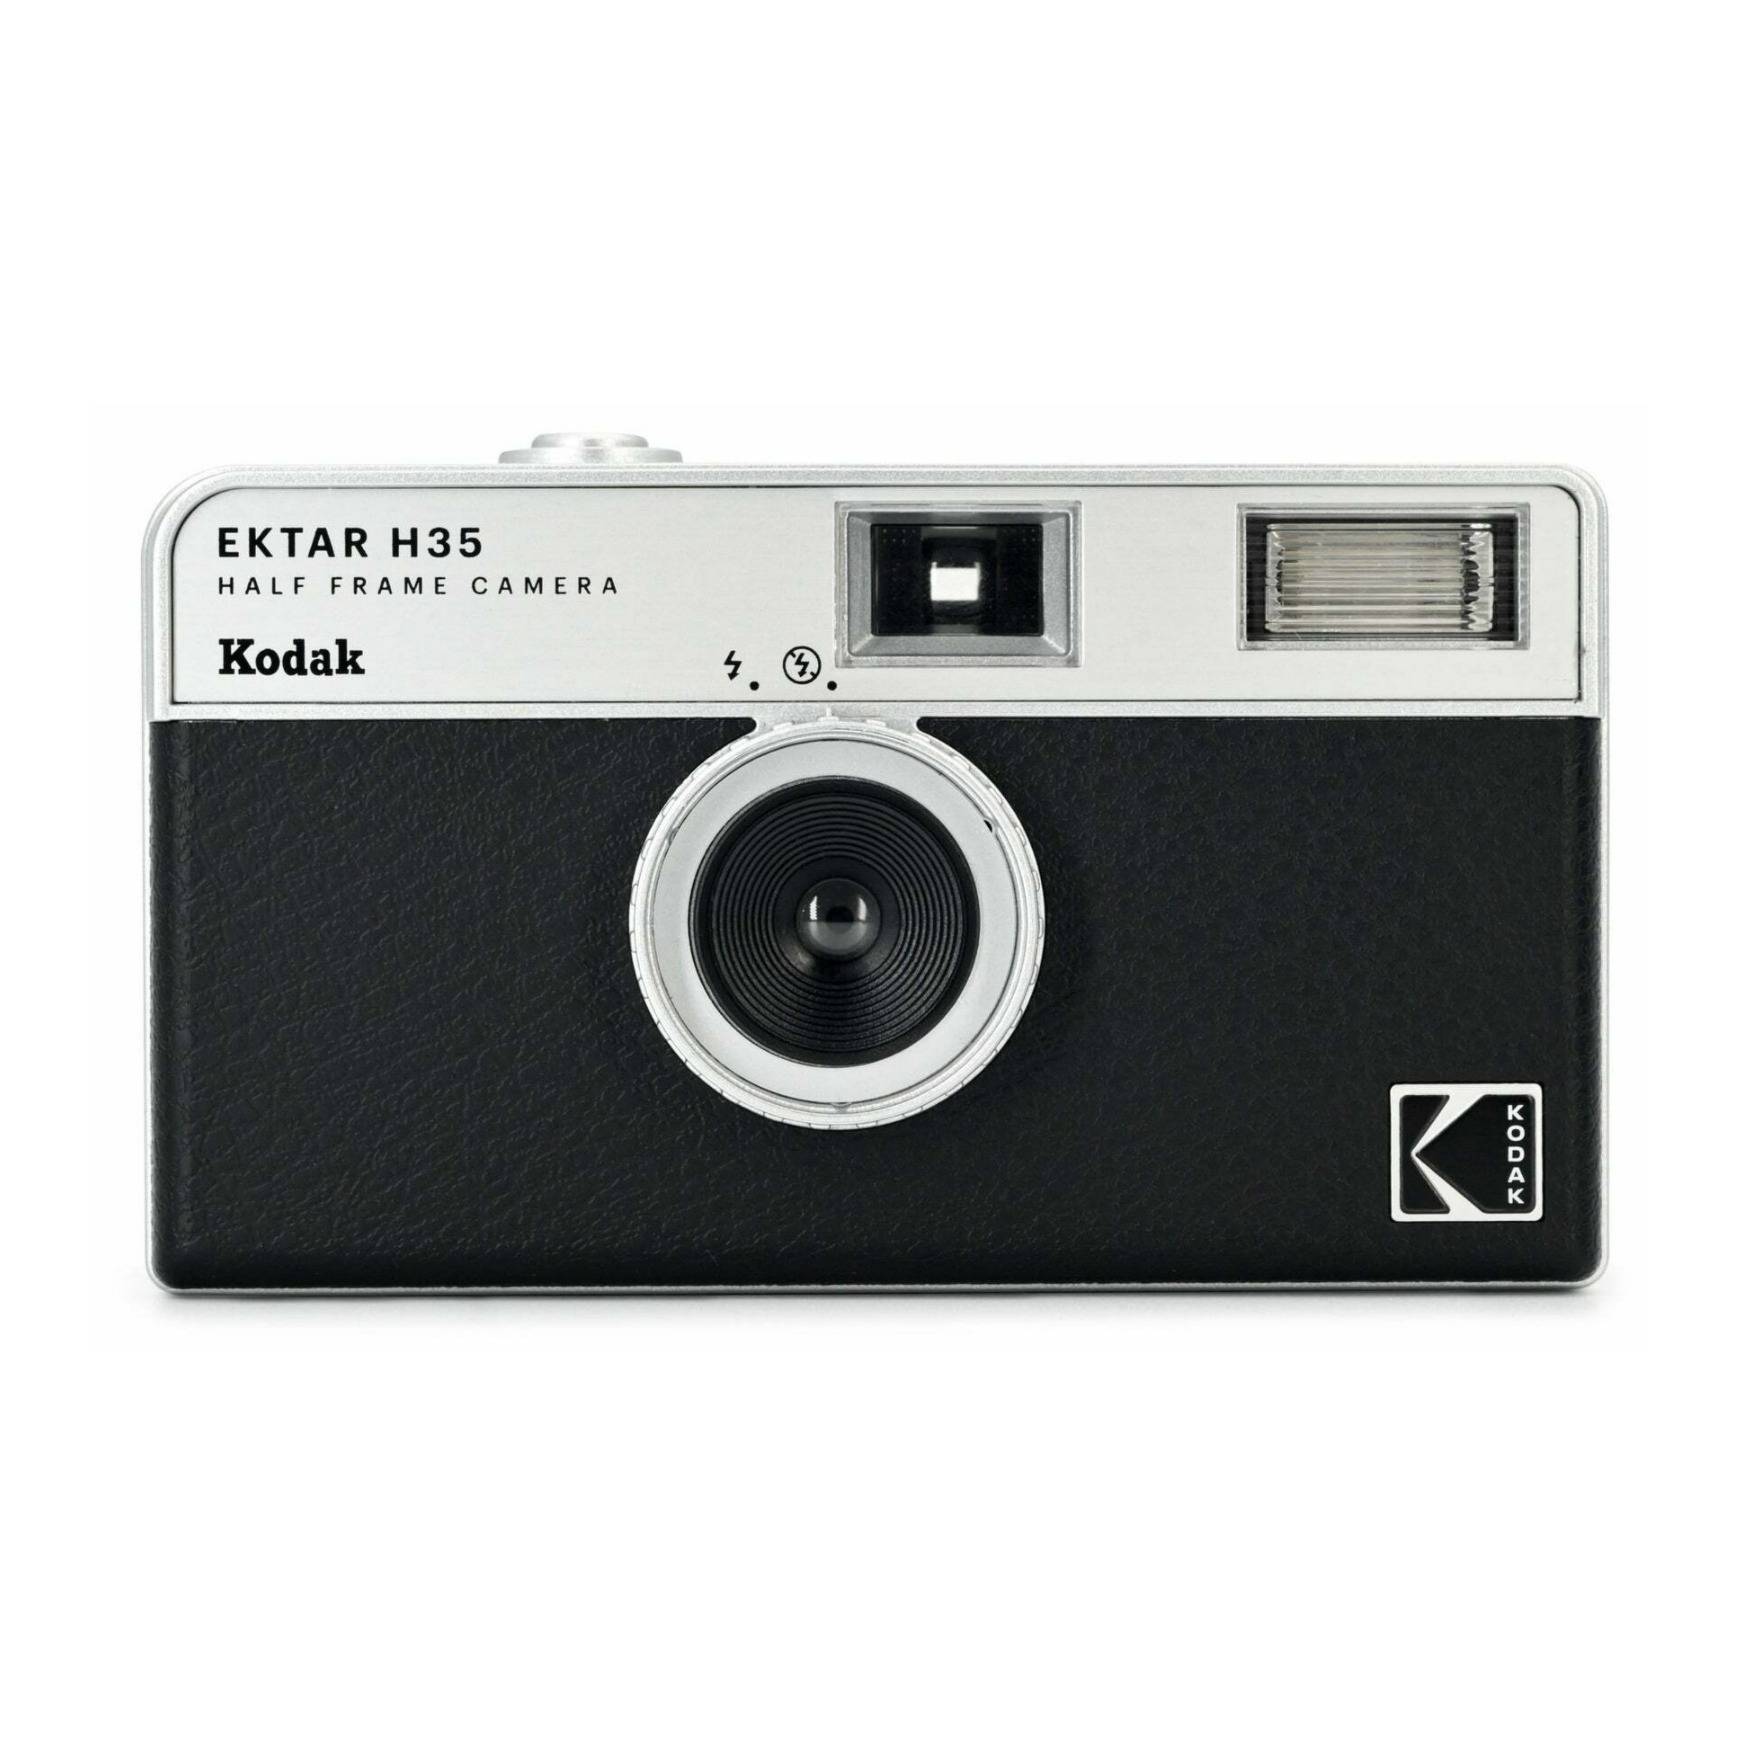 Kodak Ektar H35 Half Frame Film Camera (Black)